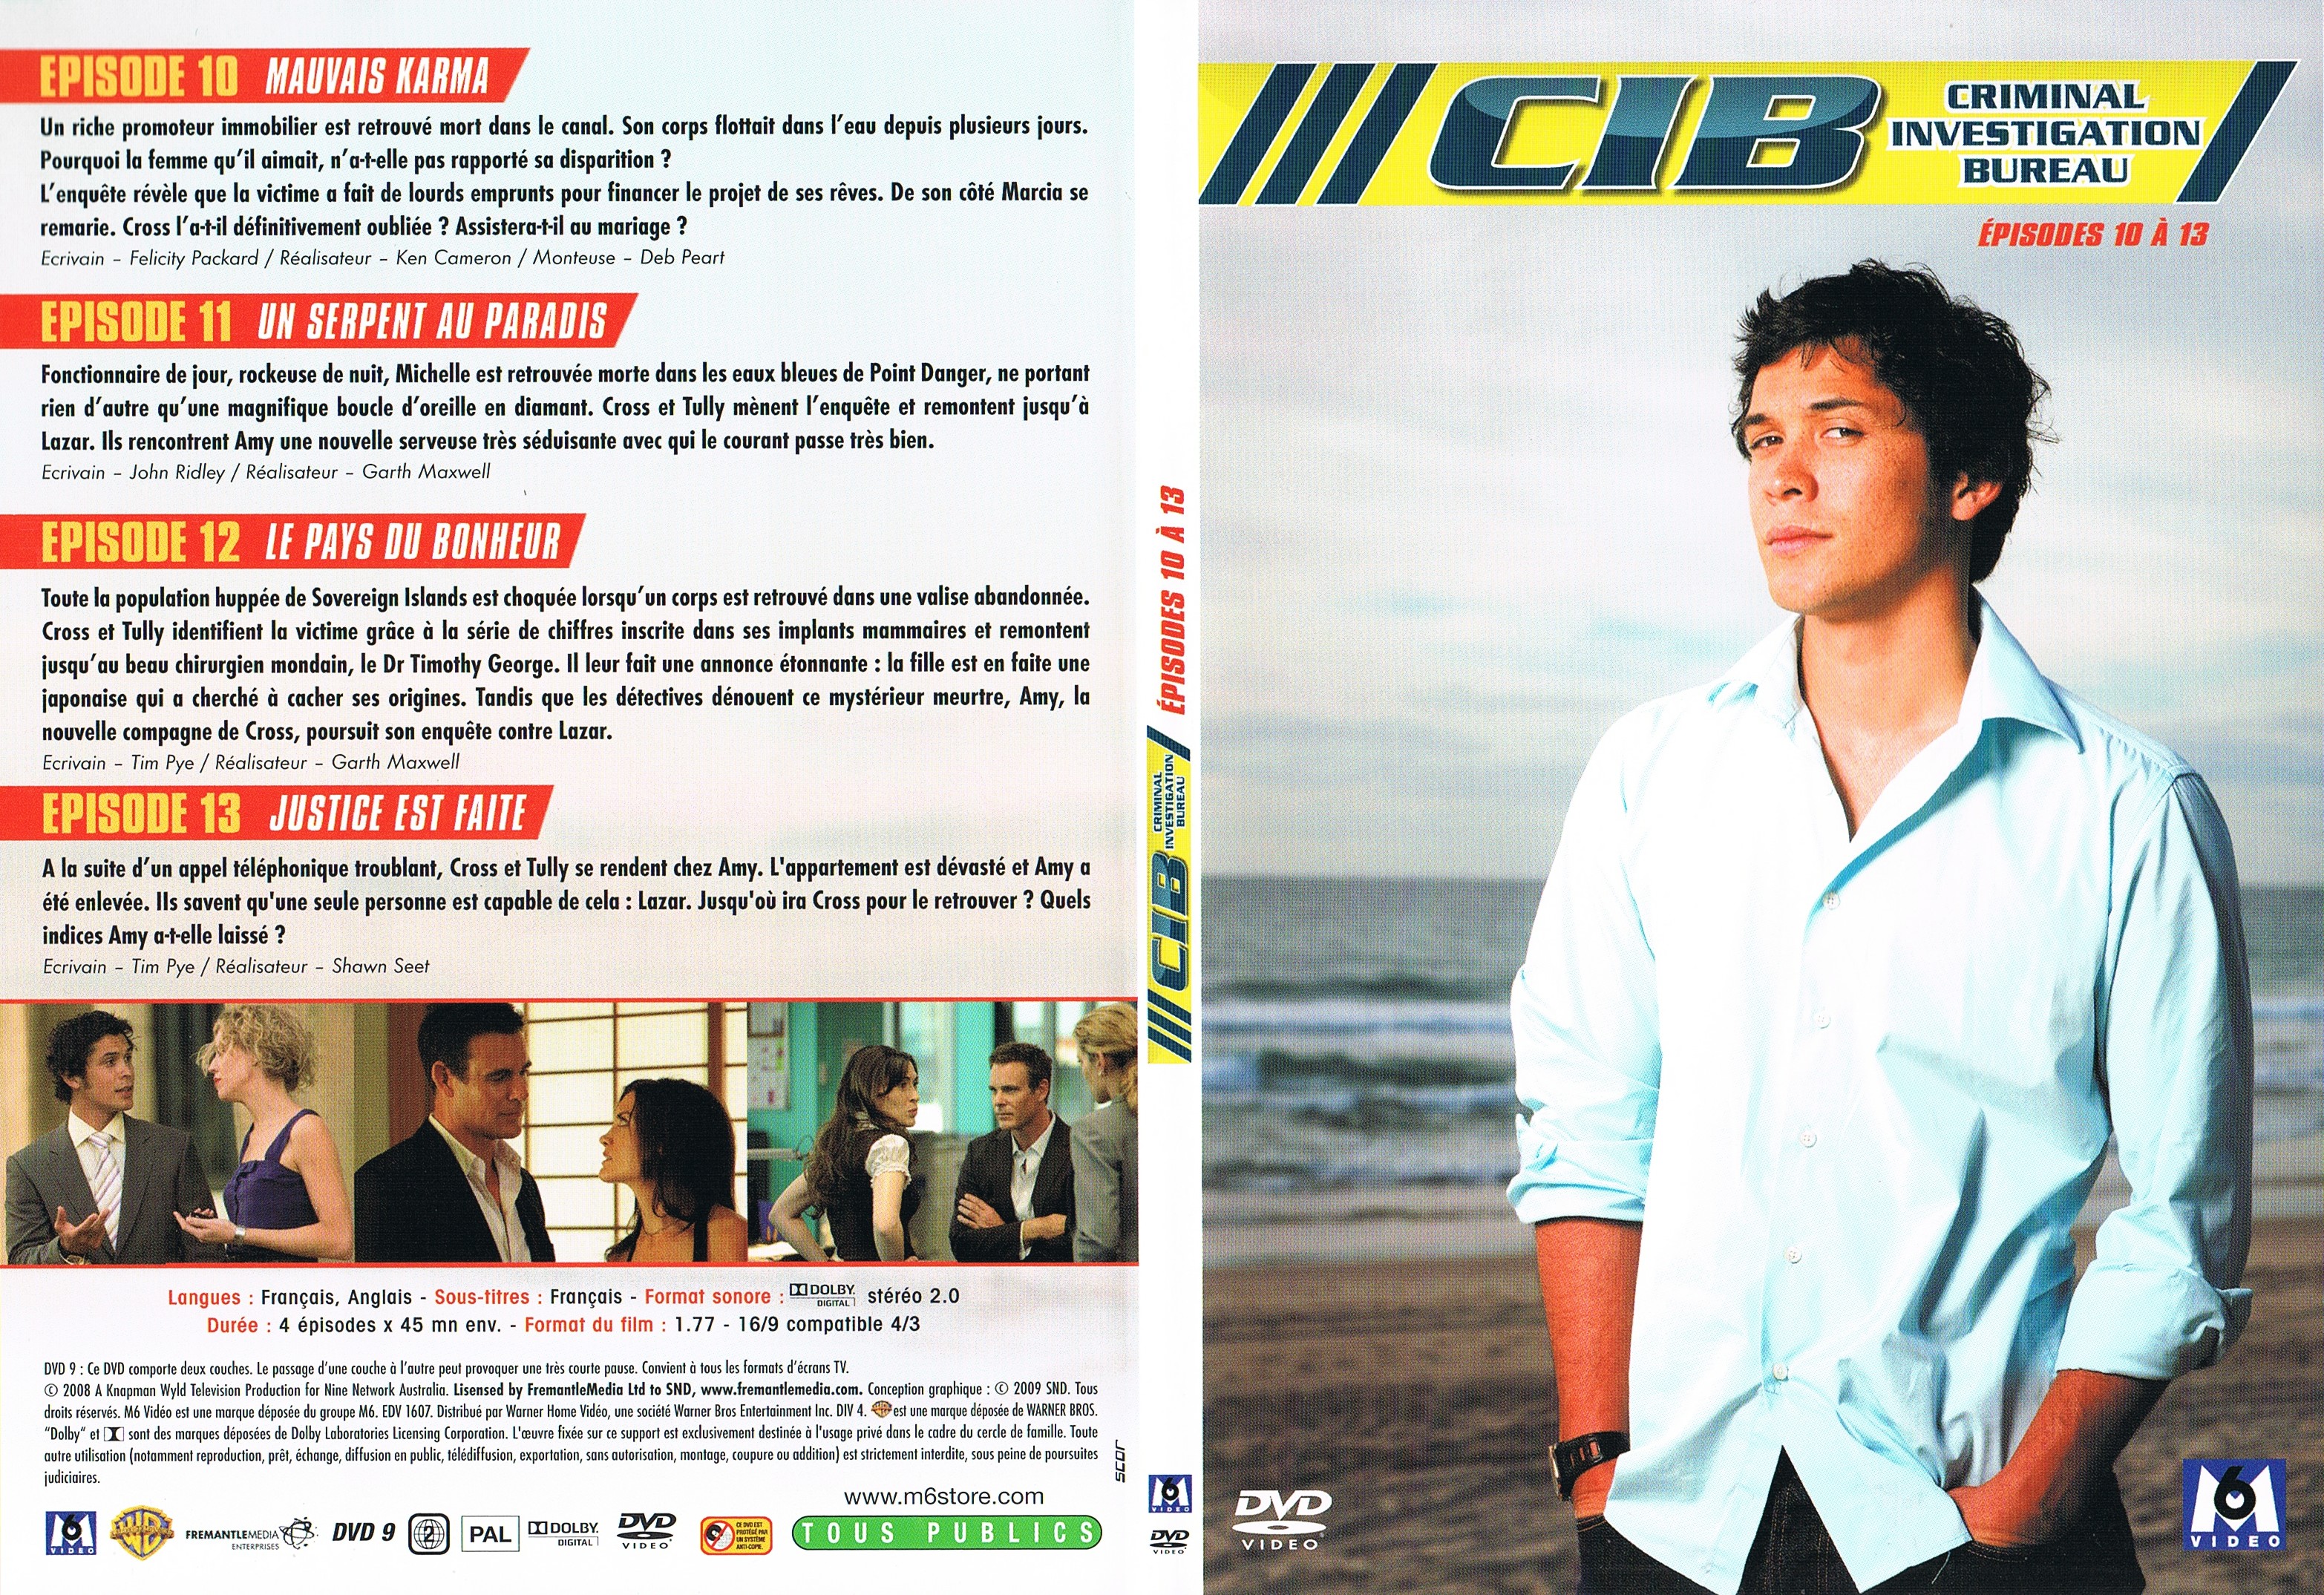 Jaquette DVD CIB Criminal Investigation Bureau Saison 1 DVD 4